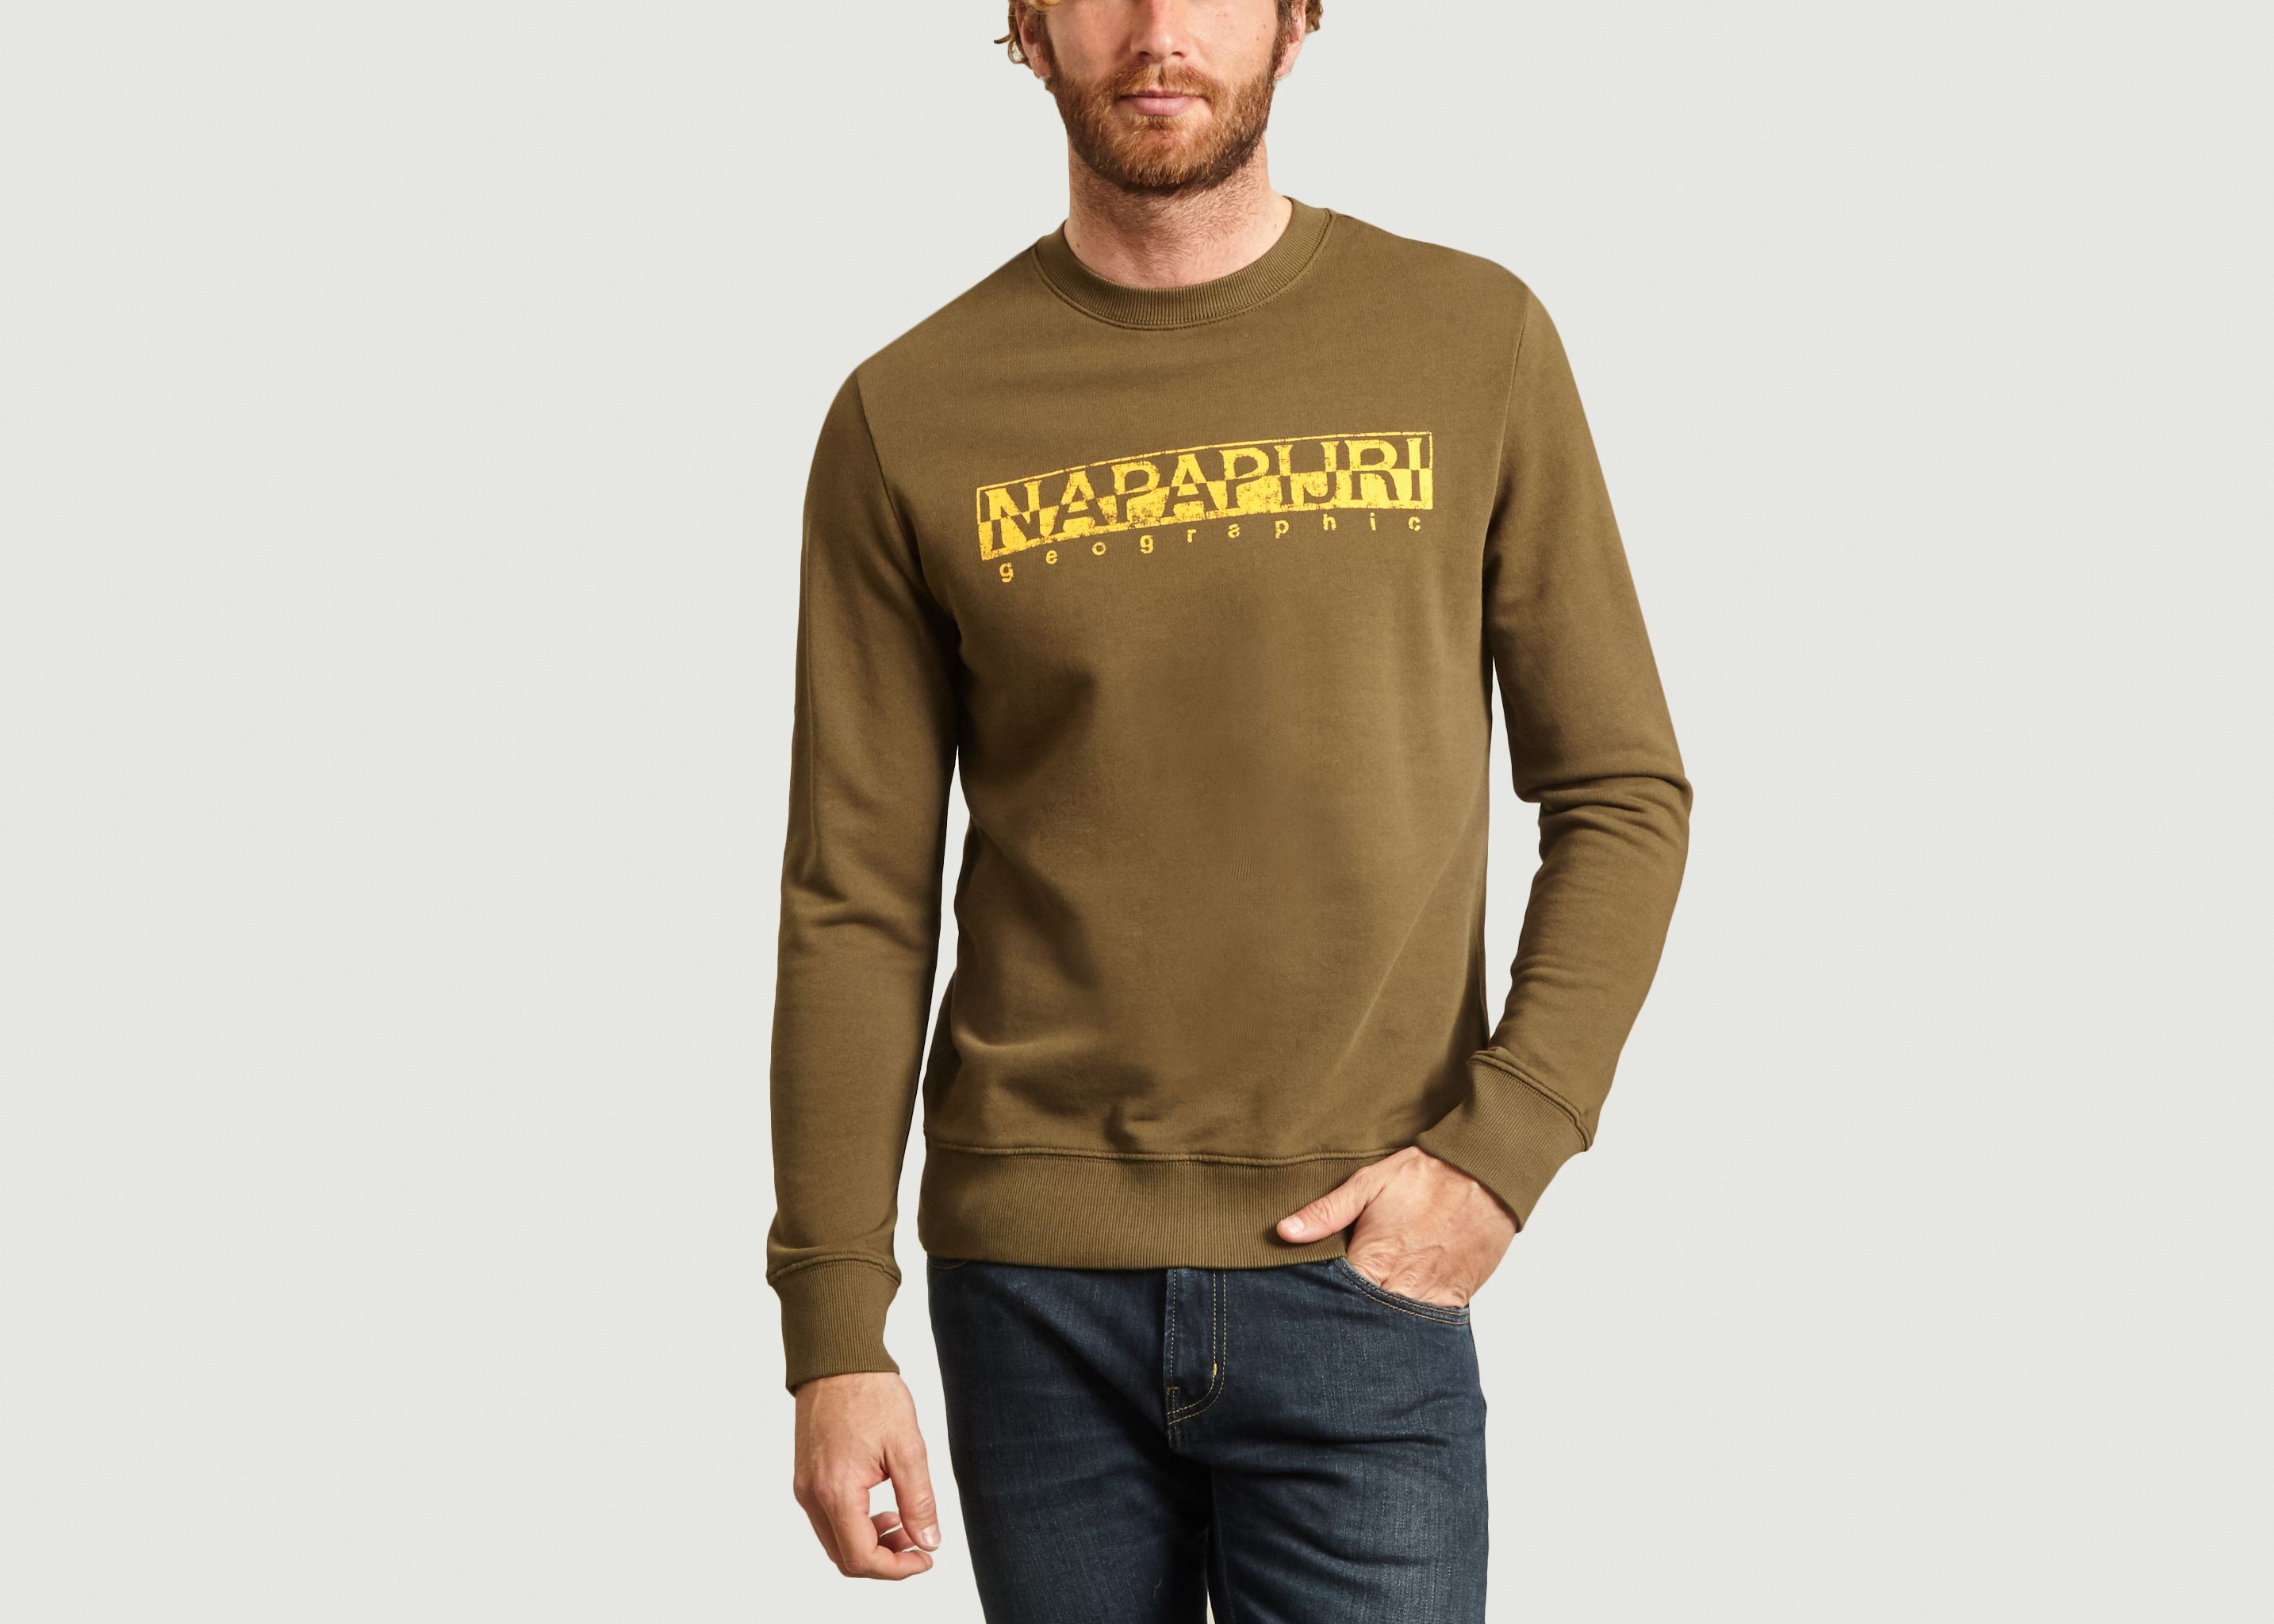 Bolanos C sweater - Napapijri